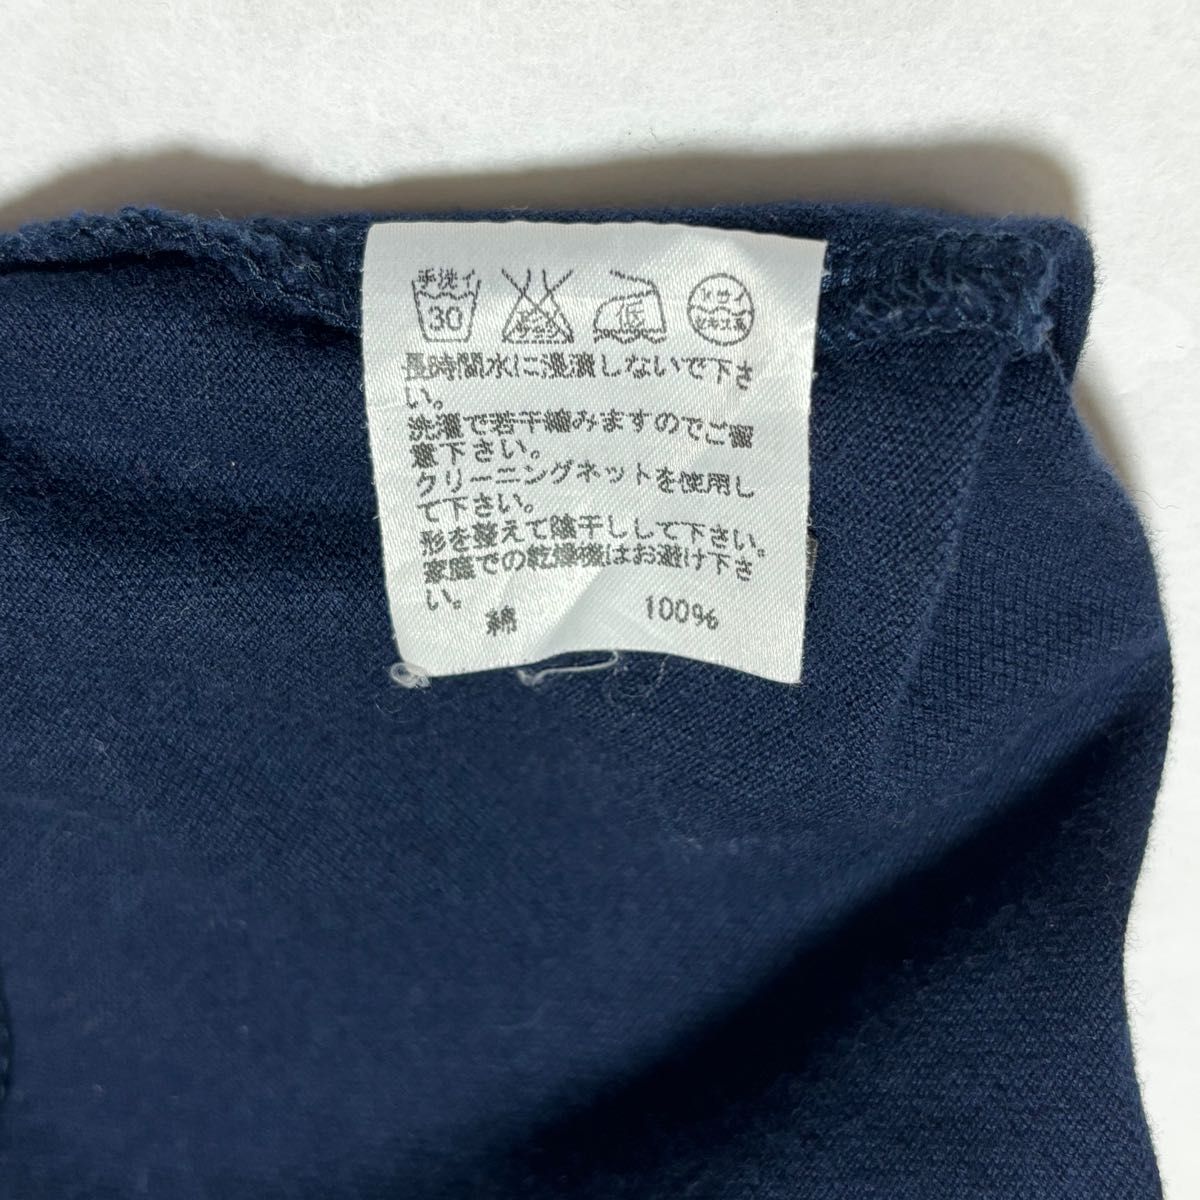 【TSUMORI CHISATO】 ツモリチサト 半袖ポロシャツ ネイビー サイズ1